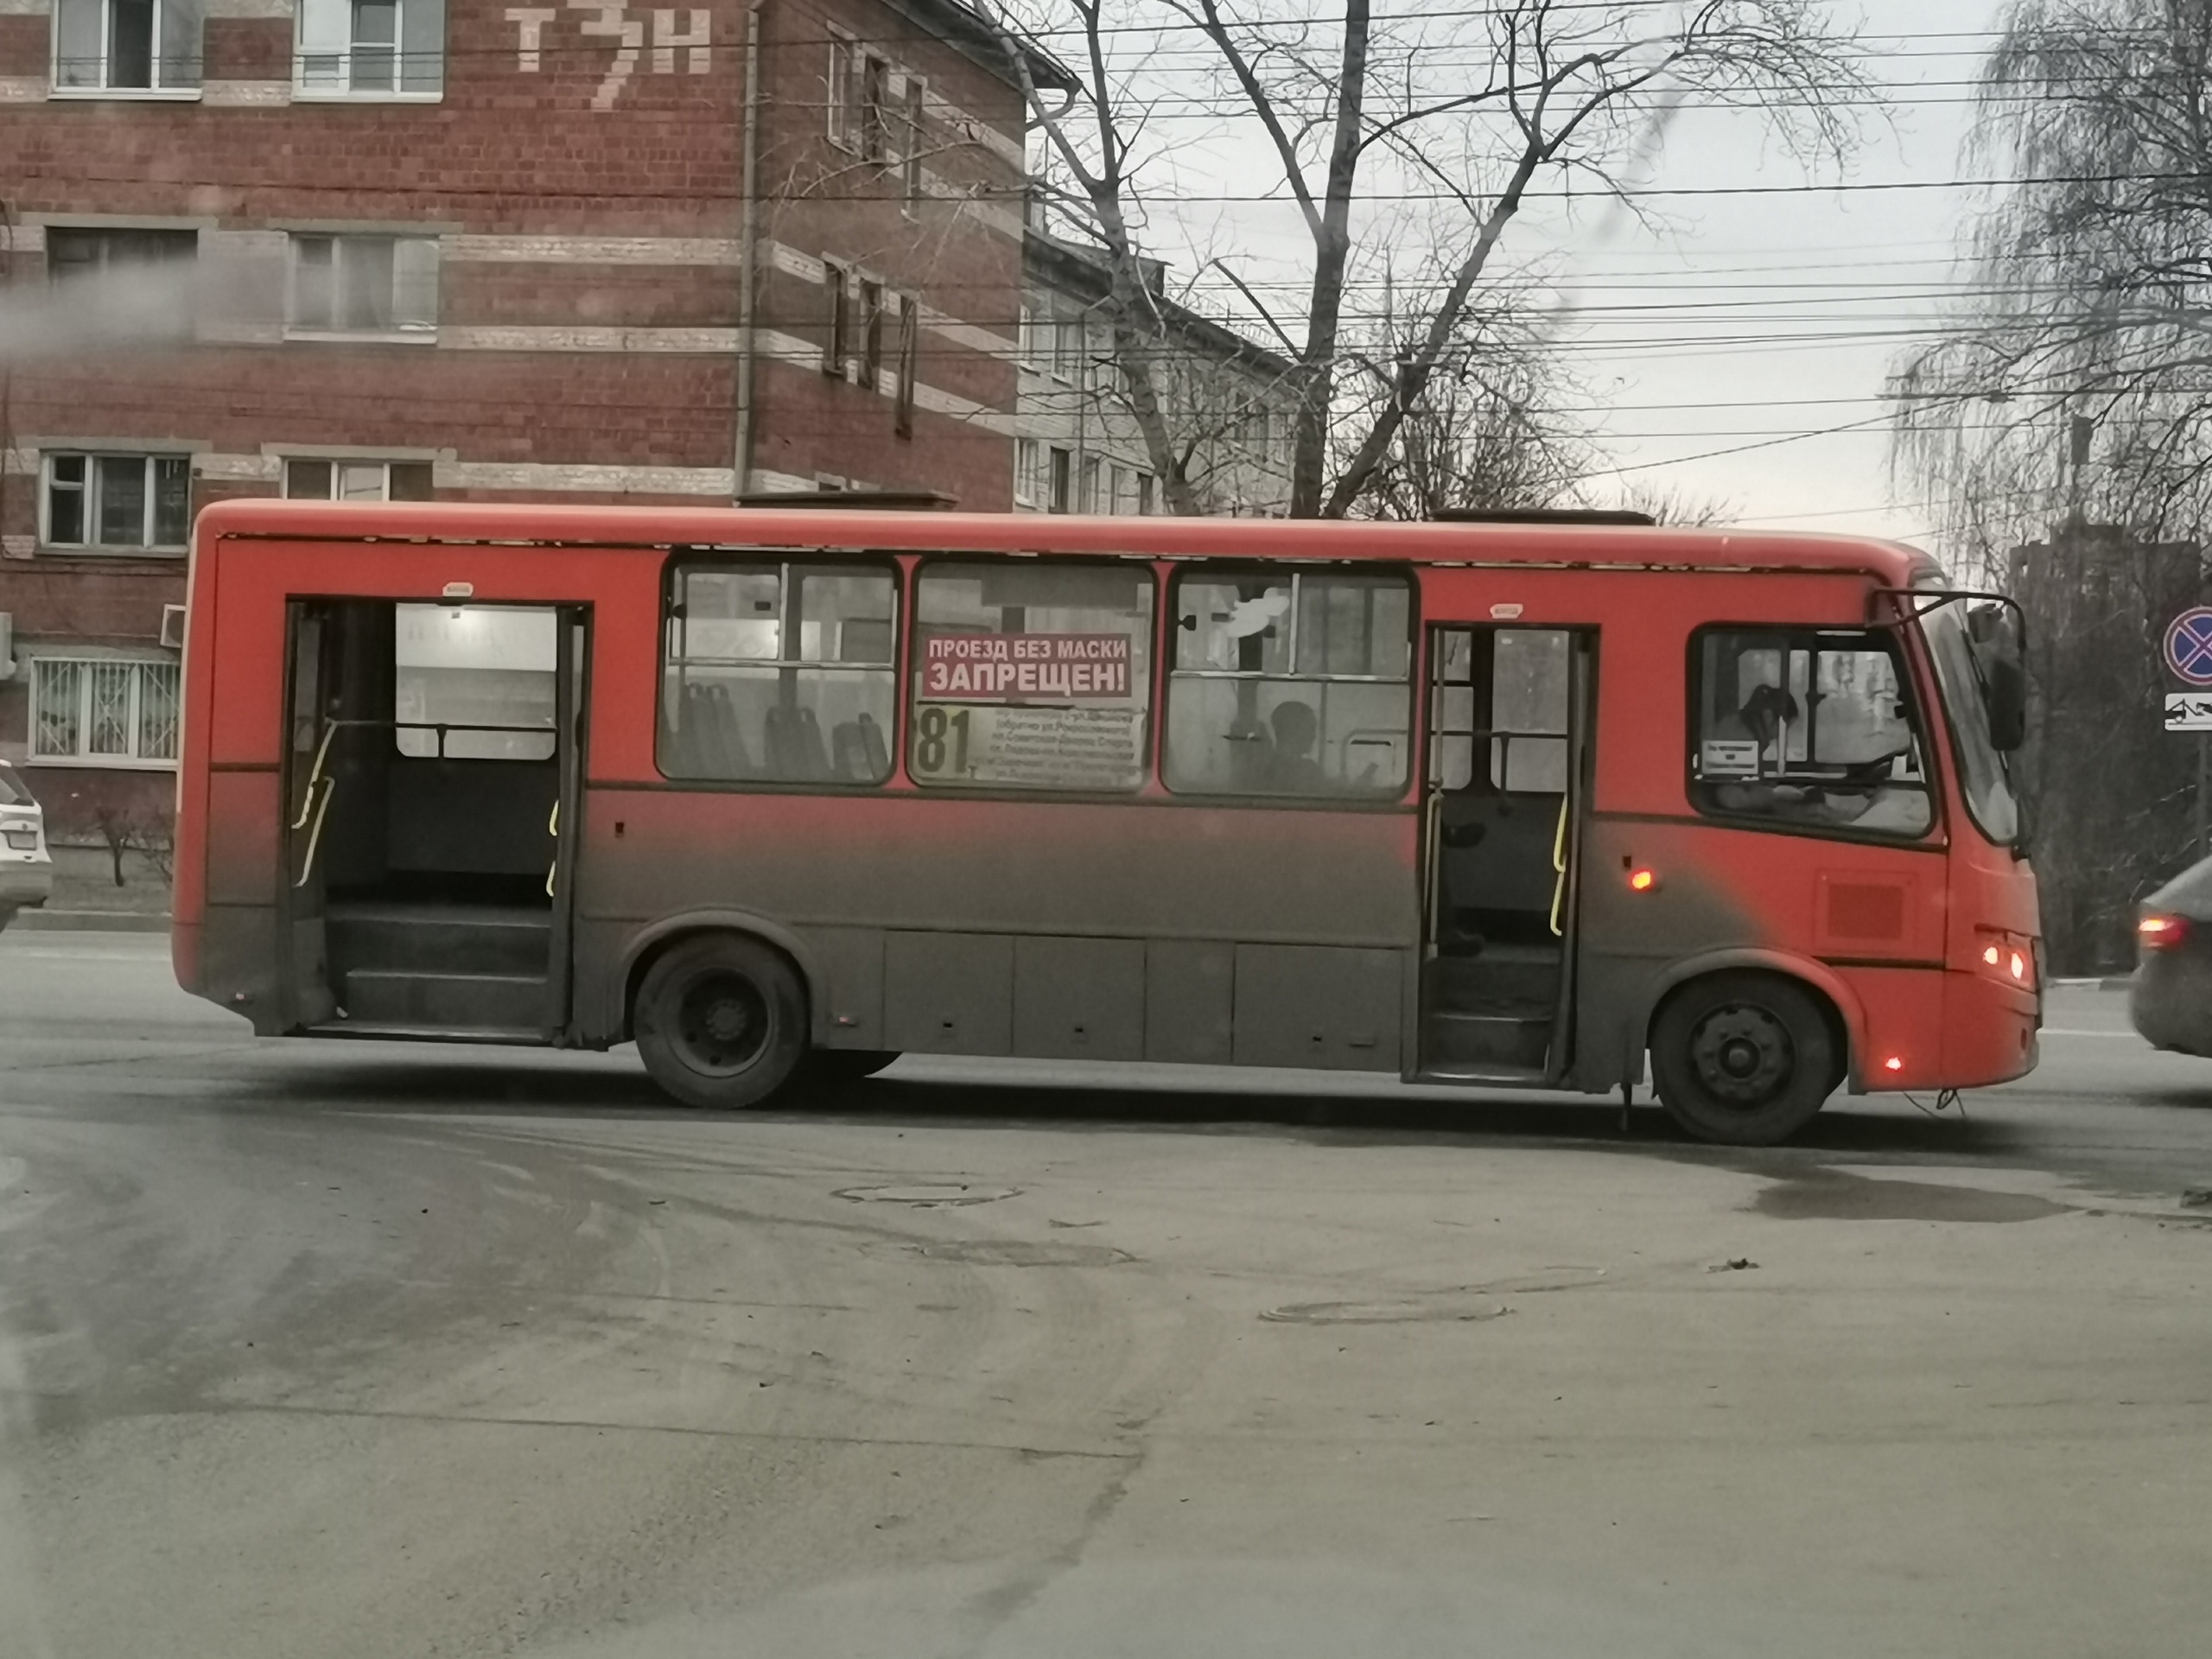 Нижний Новгород не обошел Казань в списке городов по удобству общественного транспорта